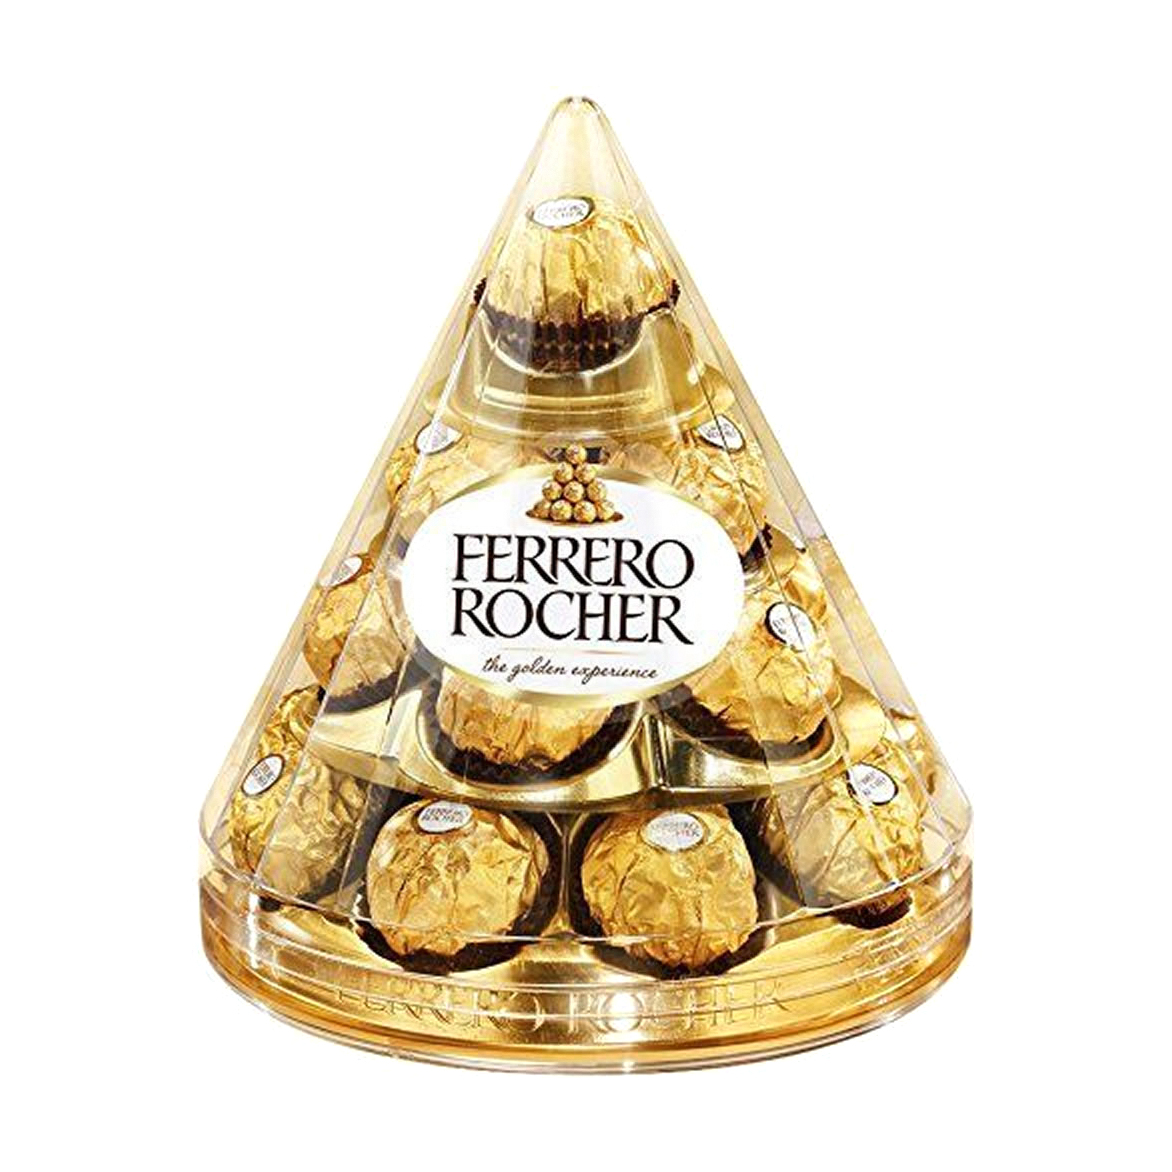 форма для шоколада конфеты сферы 30 мм Конфеты Ferrero Rocher хрустящие из молочного шоколада 212,5 г